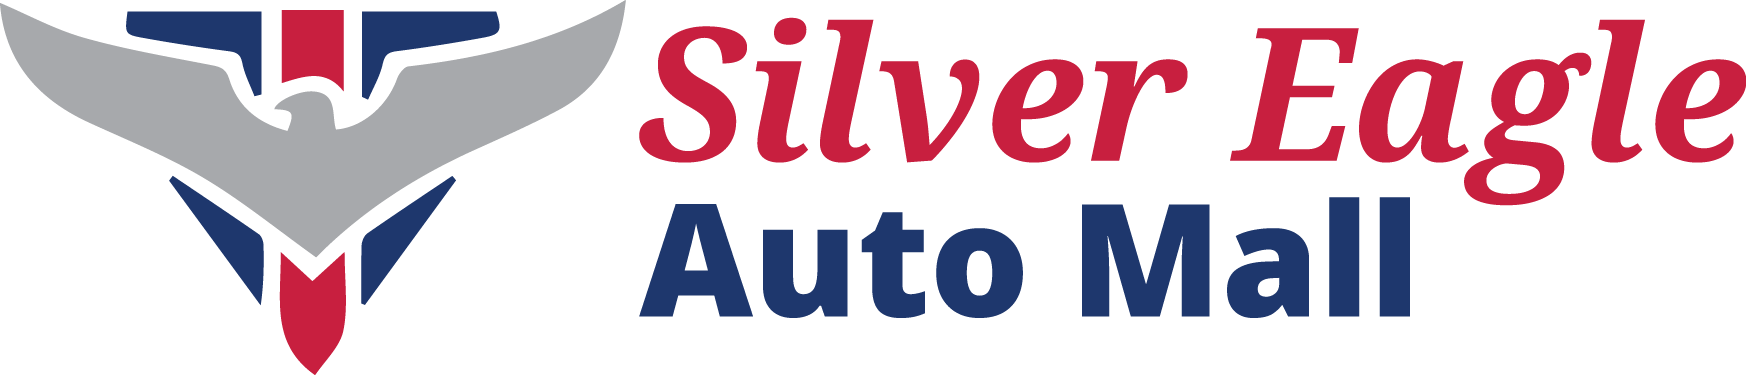 Silver Eagle Auto Mall Inc